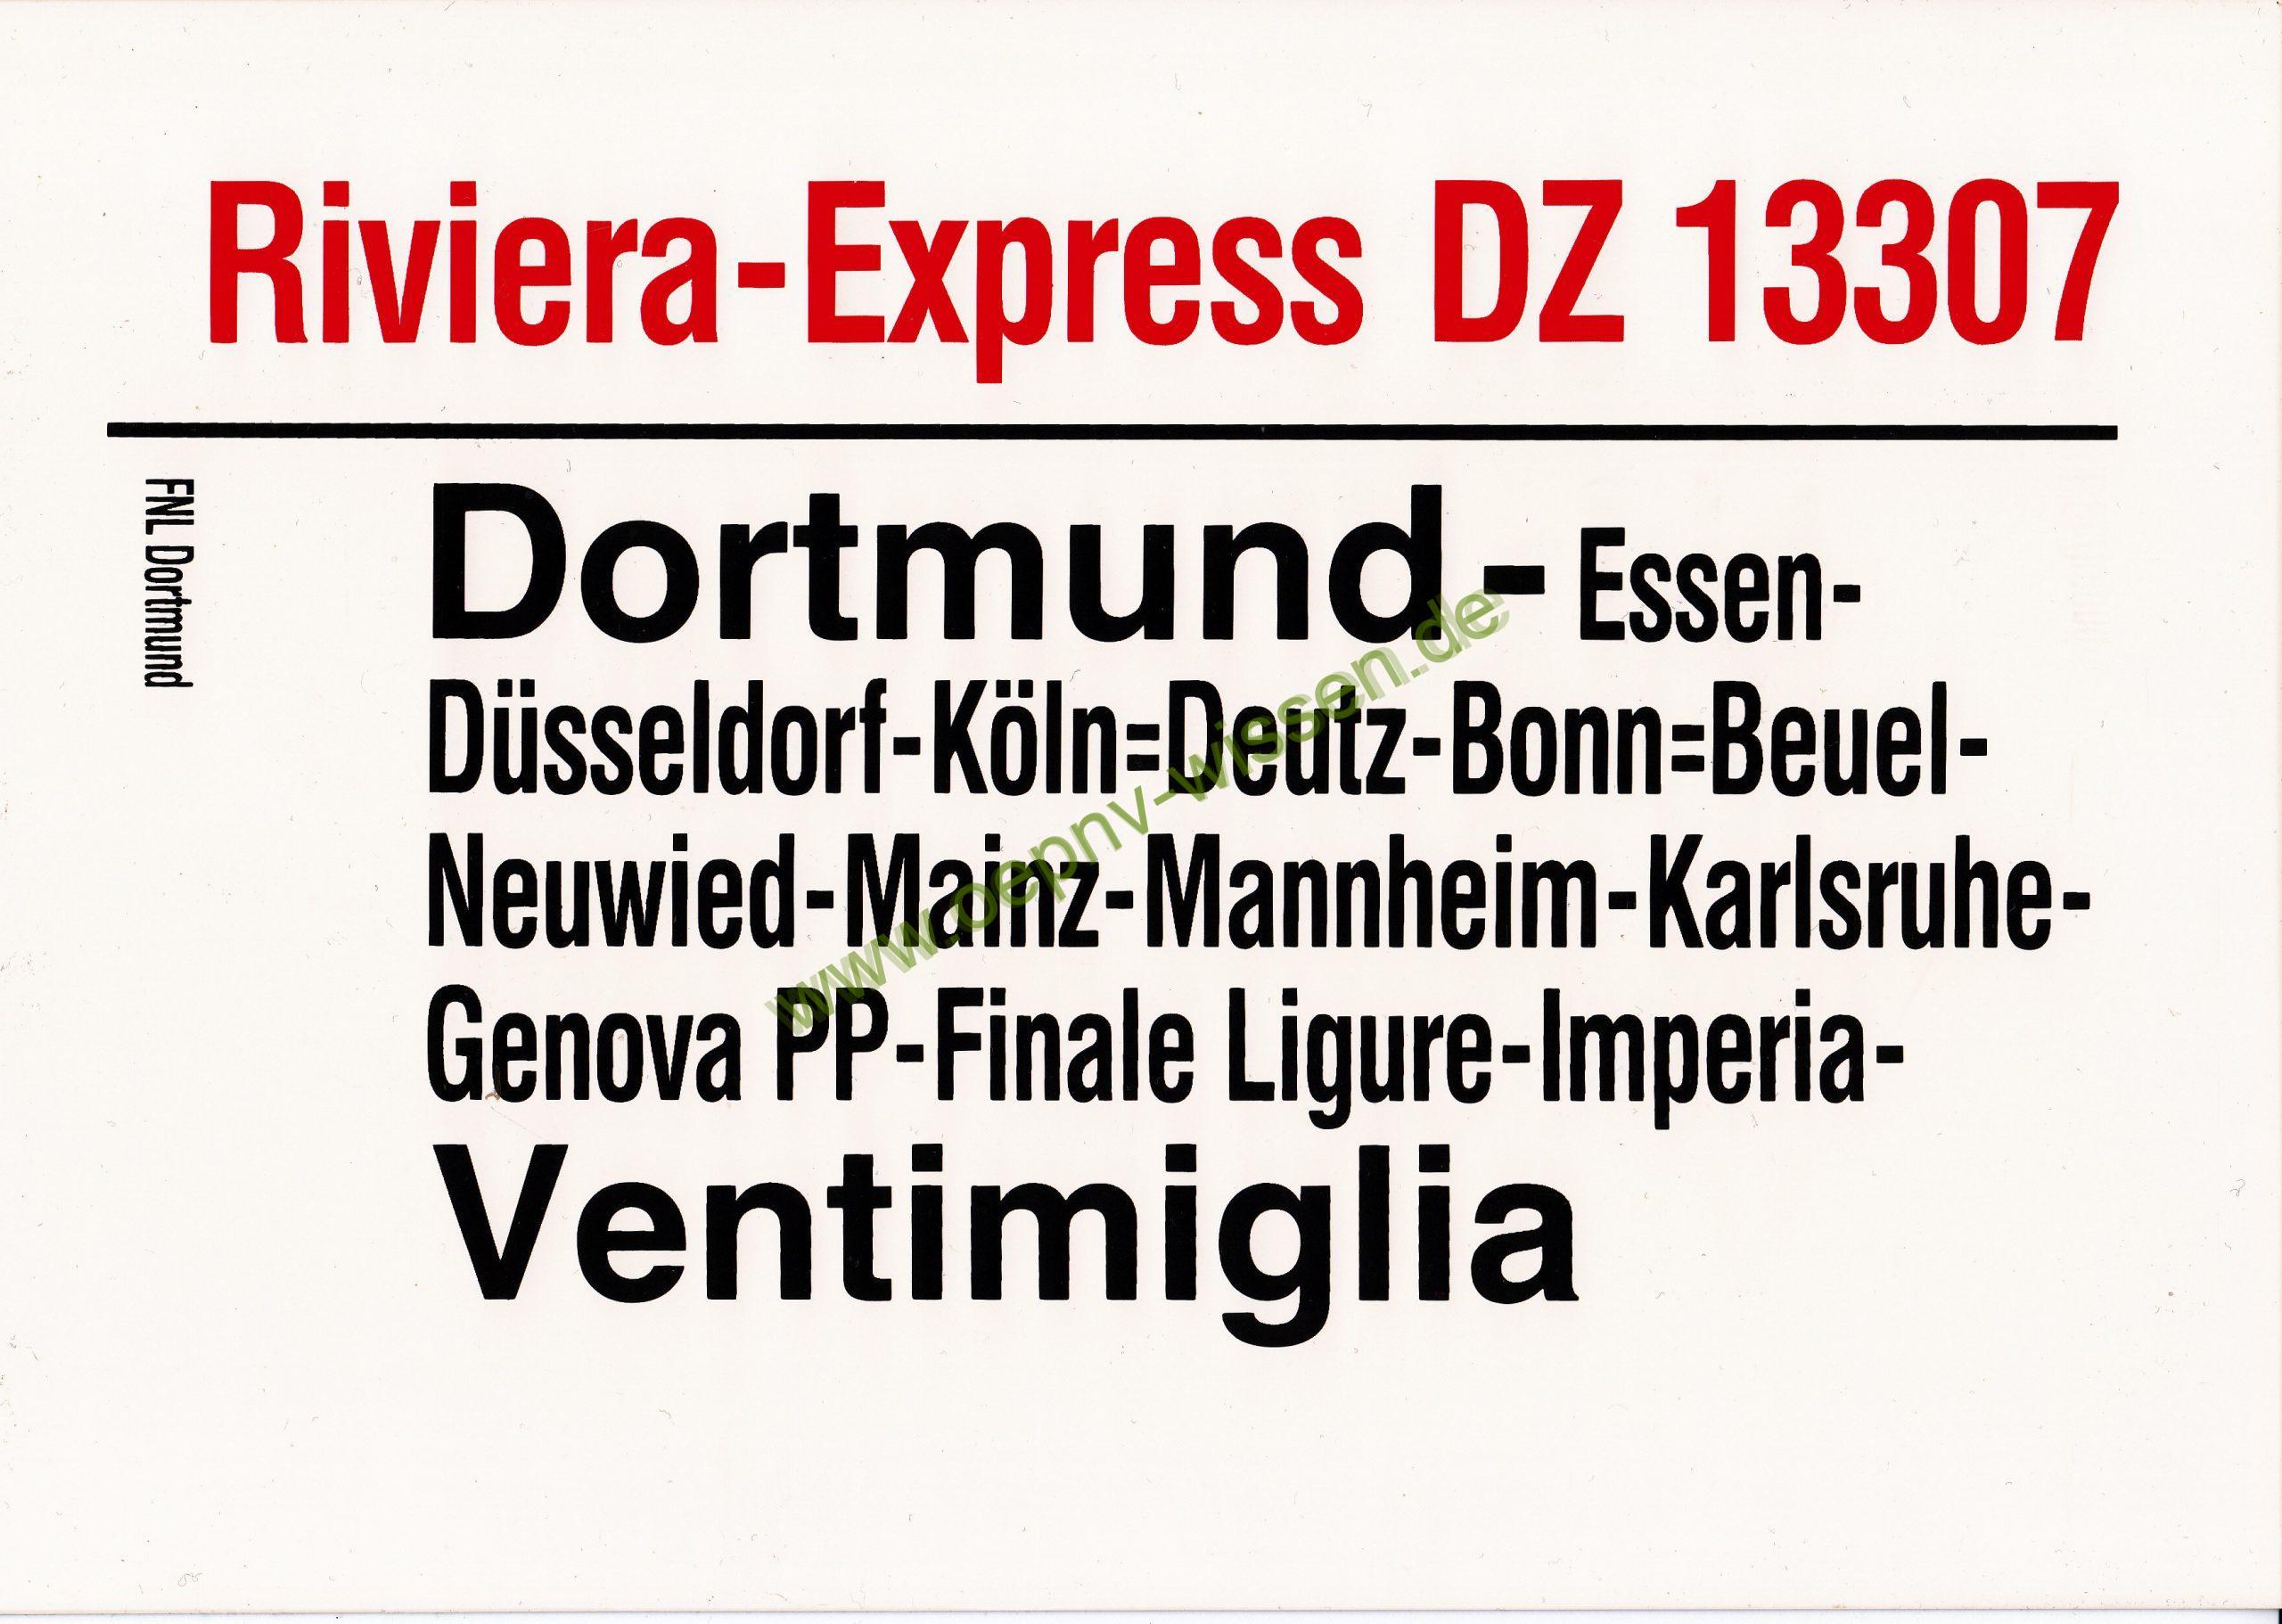 DZ_13307_Riviera_Express